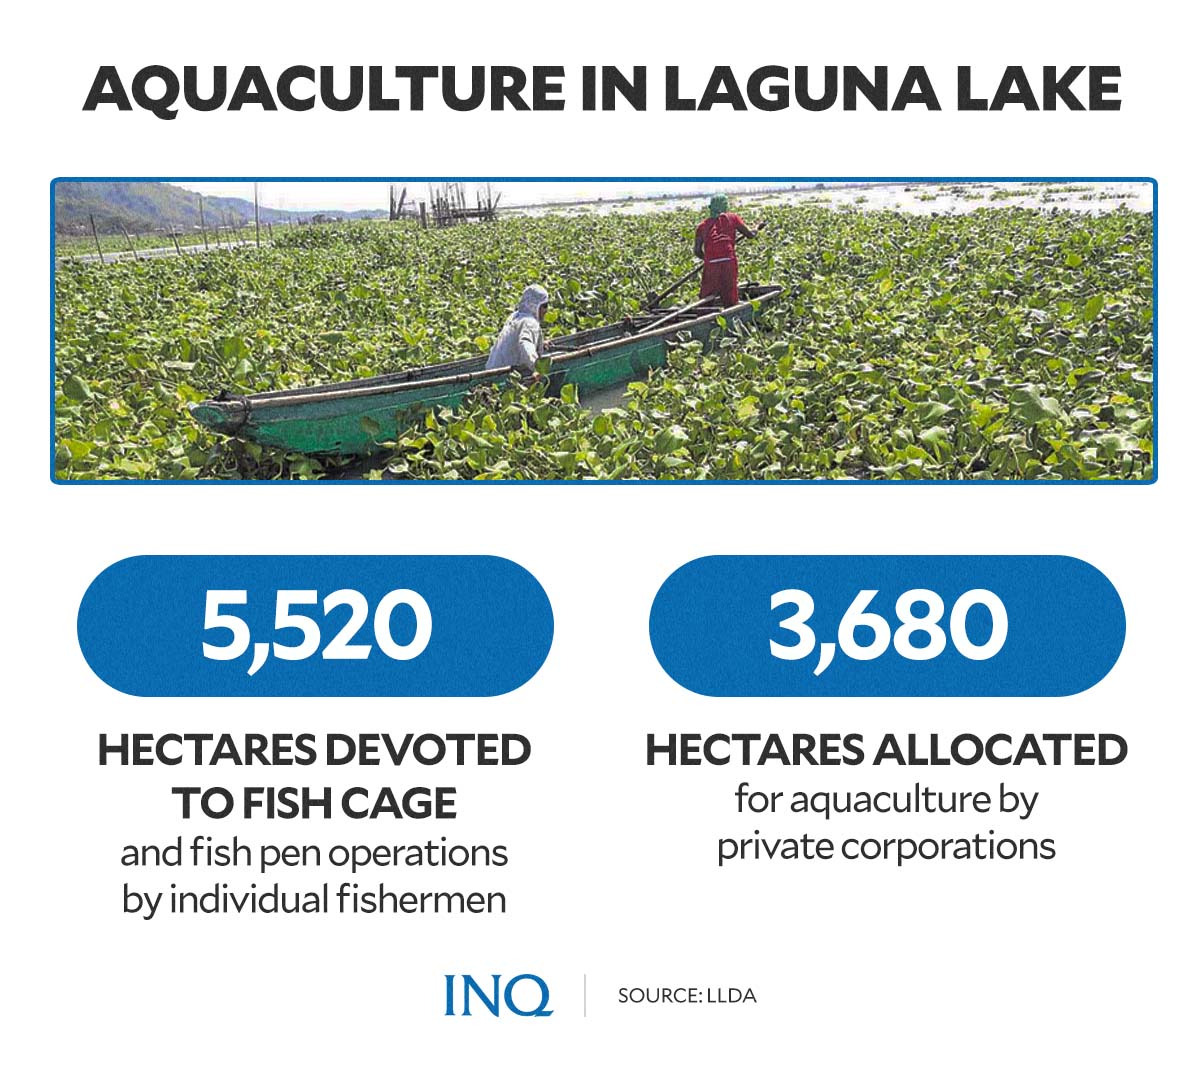 Aquaculture in laguna lake